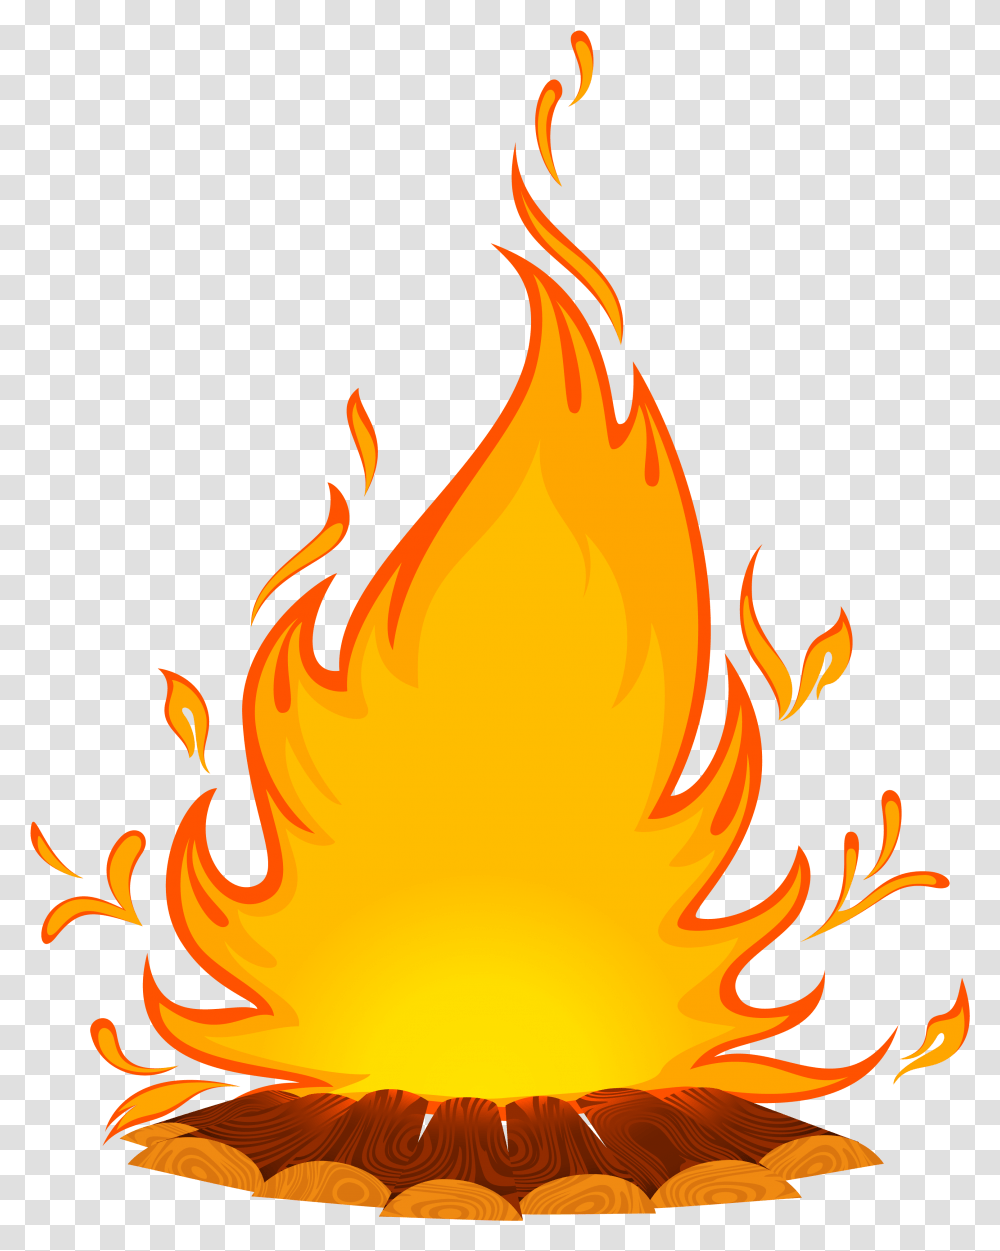 Fire Cartoon Clip Art Campfire Download 30323840 Campfire Cartoon, Flame, Bonfire Transparent Png